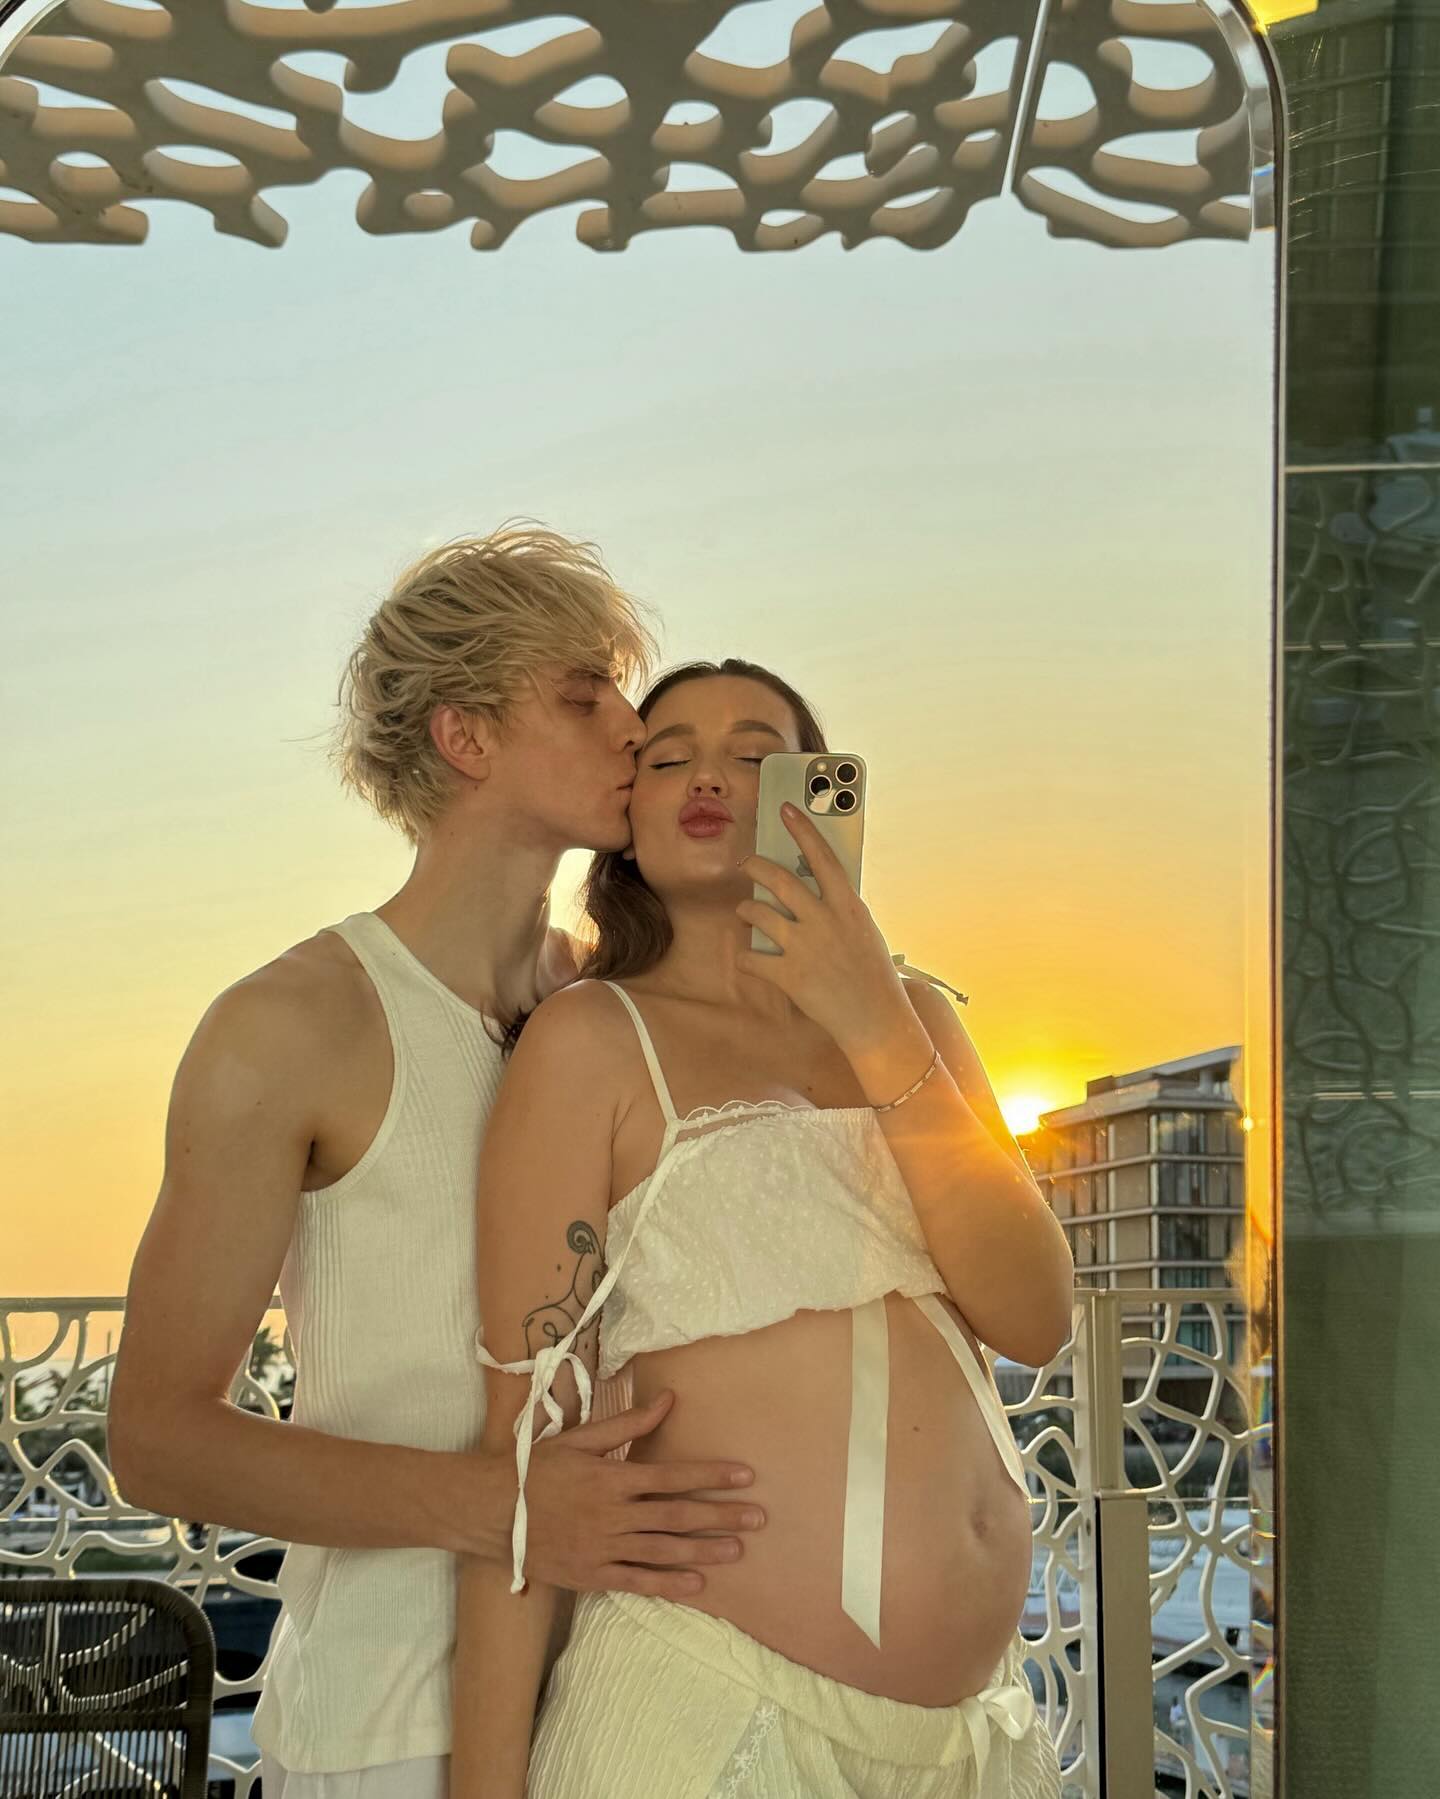 Известный блогер Влад А4 скоро станет отцом, а его подруга Юлия Годунова сделала беременную фотосессию в пижамных трусиках. Кто такая Юлия Годунова и как она выглядела до беременности